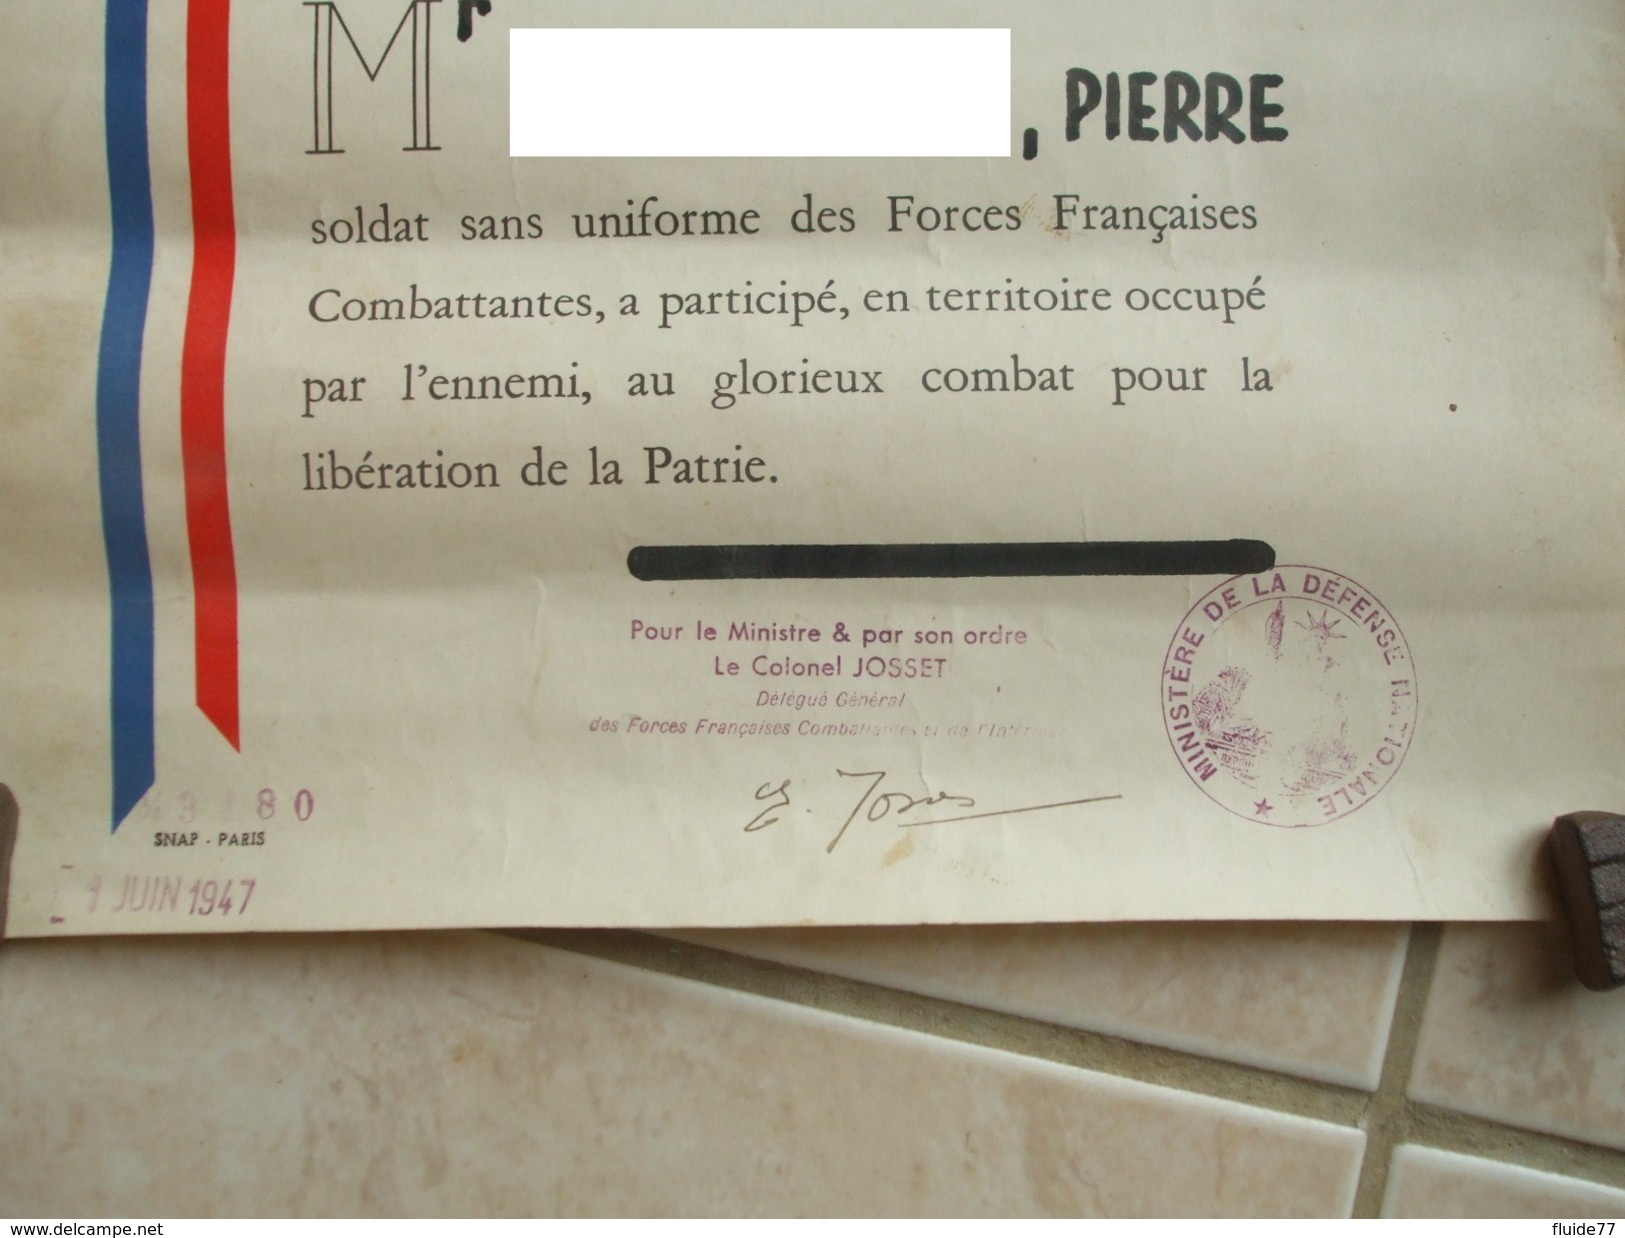 @ Diplome D'honneur Et Patrie Forces Francaises Combattantes De L'Interieur ( FFI ) Décerné Le 1 Juin 1947 @ - Documenti